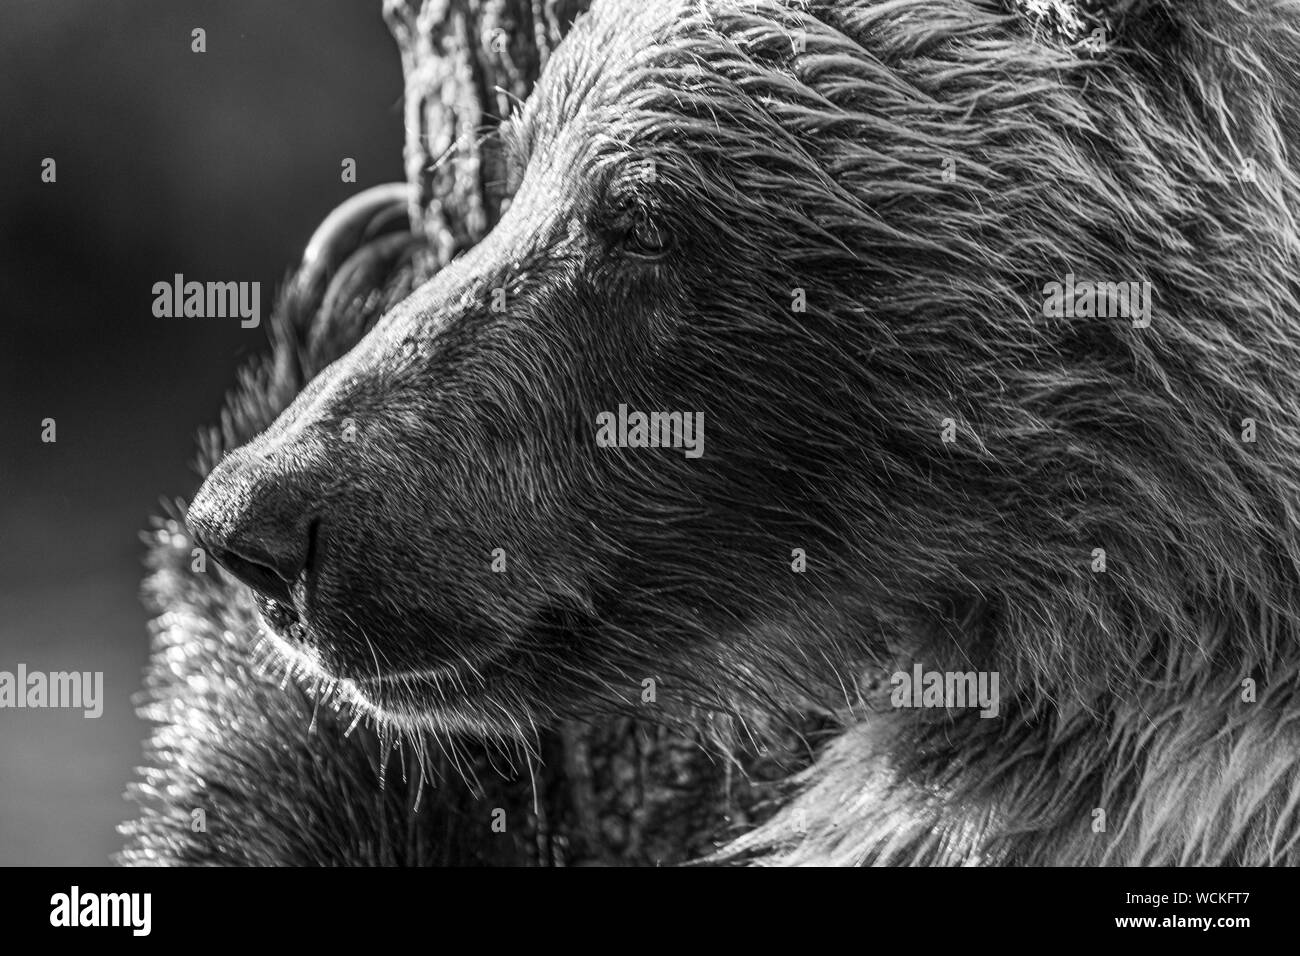 Dettaglio del volto di un orso grizzly sfregamento contro un albero, Ursus arctos horribilis, orso bruno, Nord America, Canada, Foto Stock